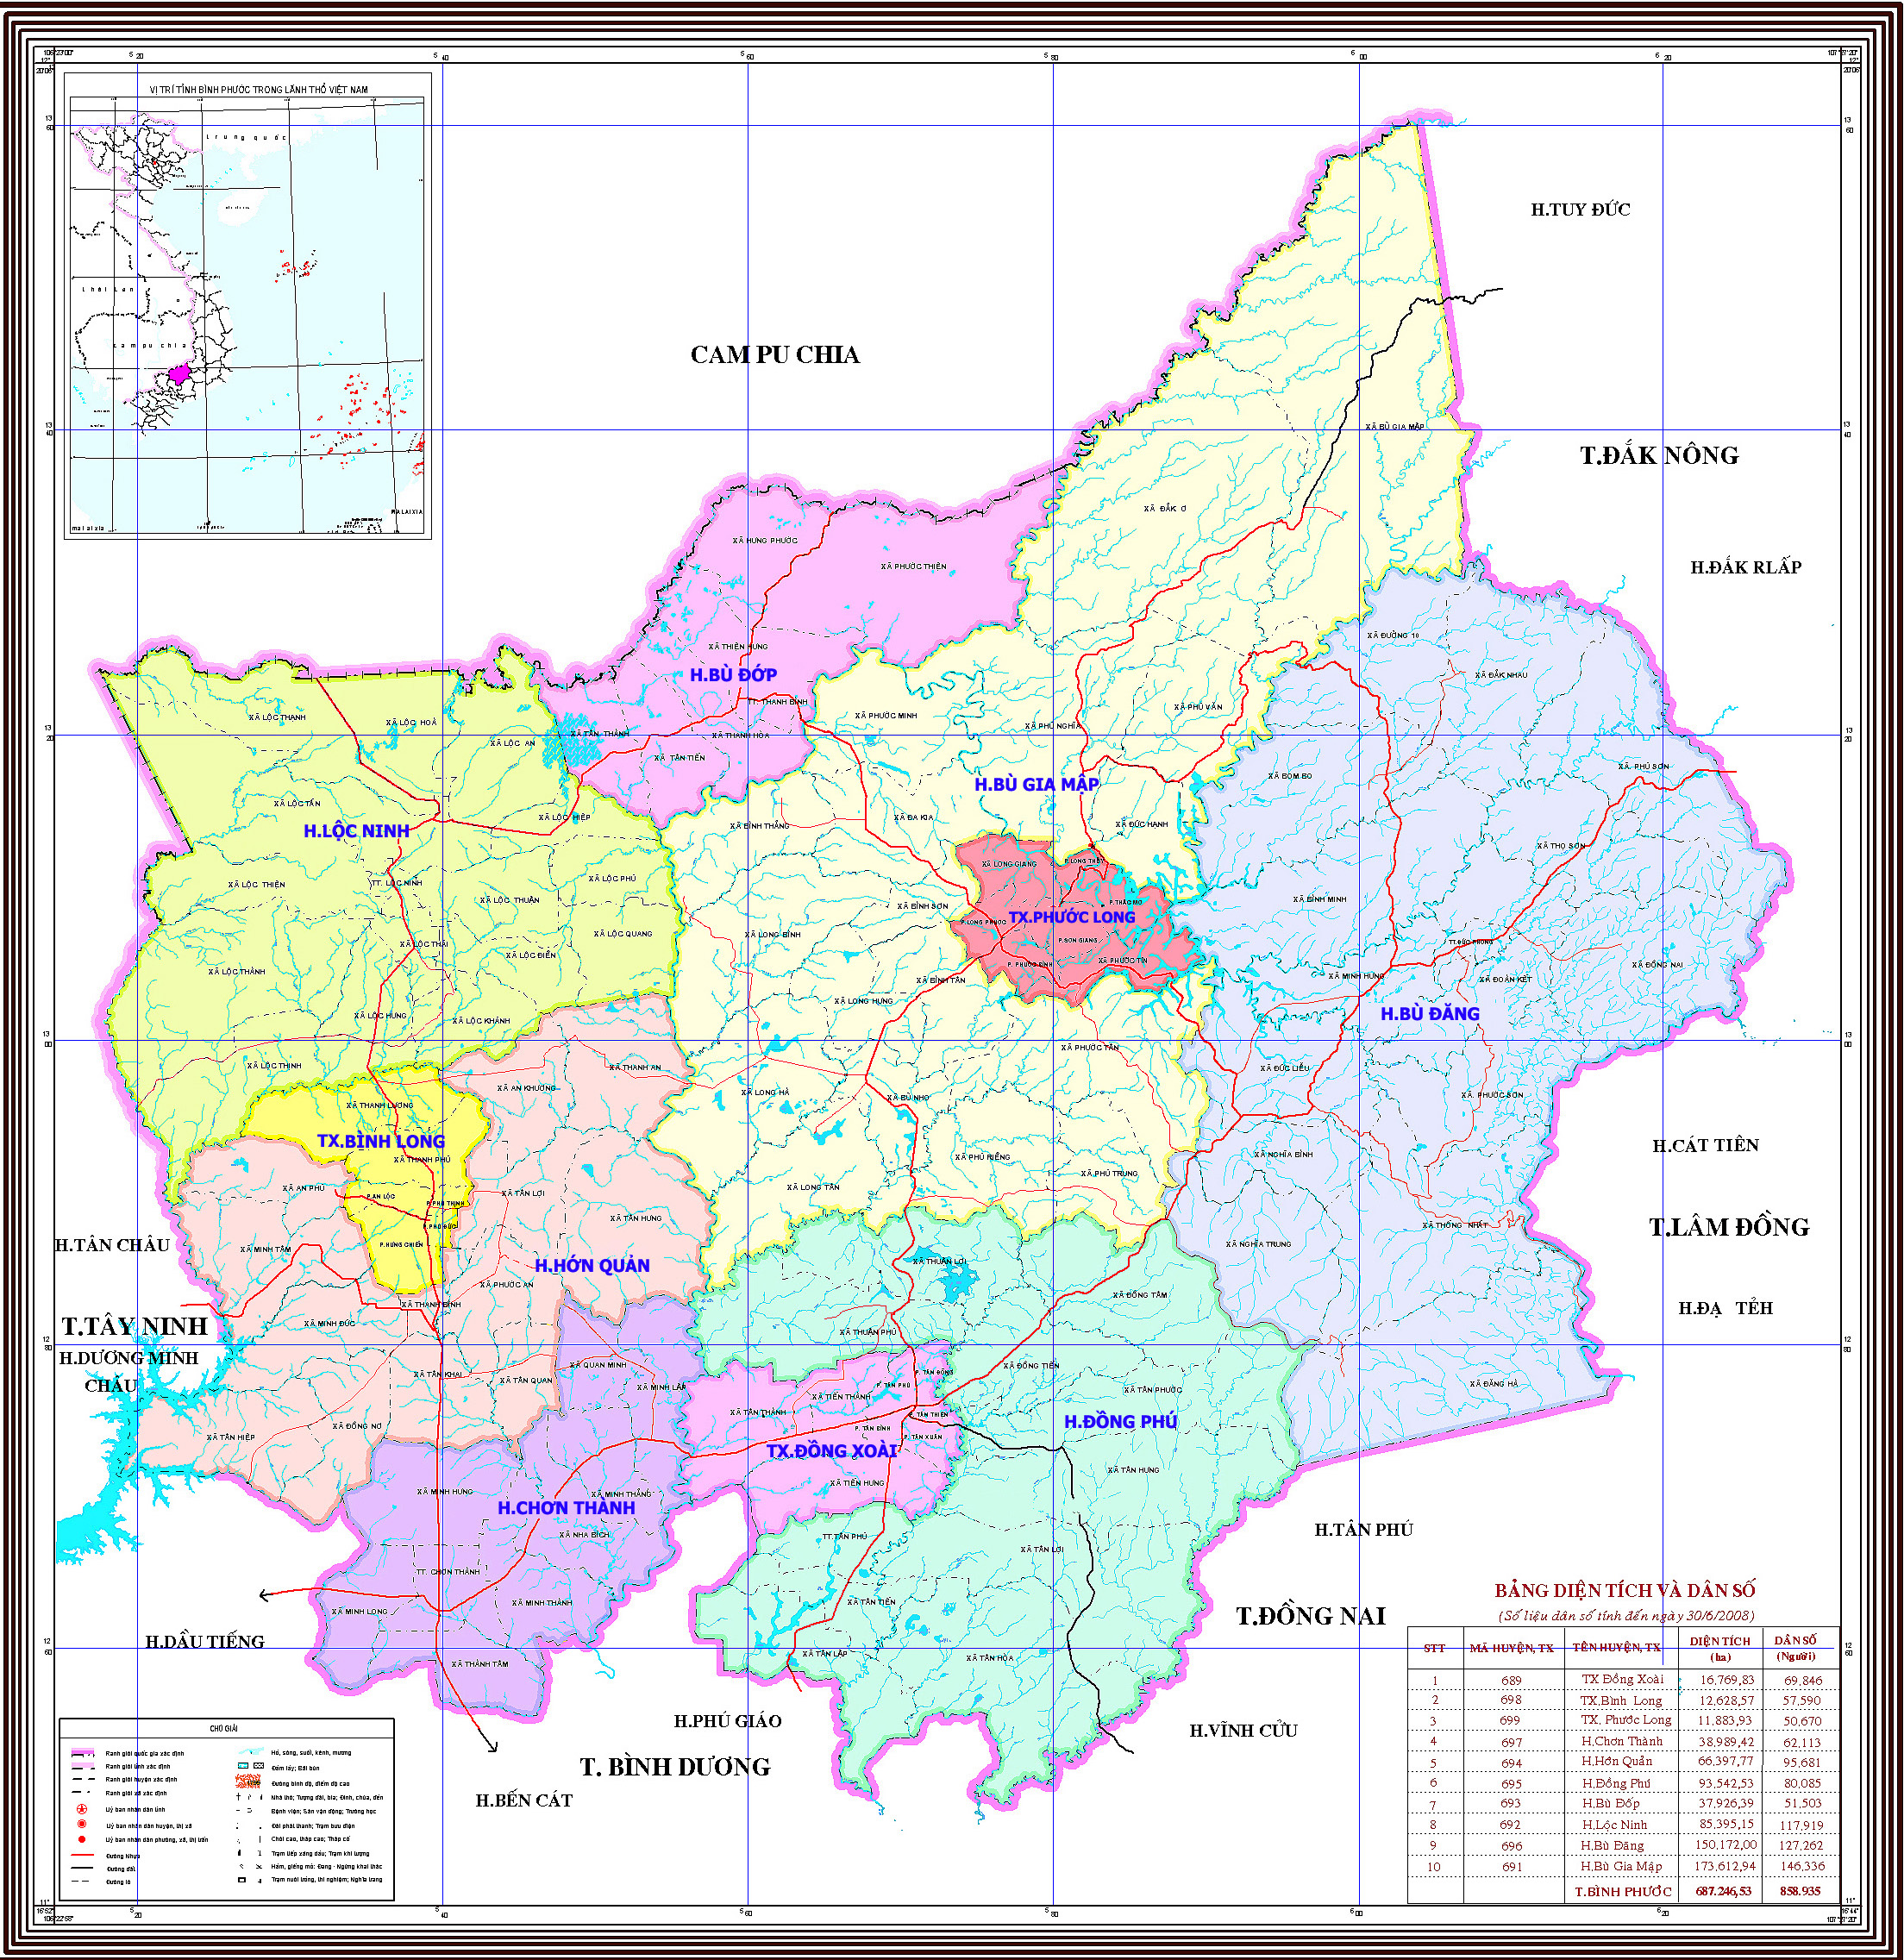 Với bản đồ hành chính tỉnh Bình Phước, bạn có thể dễ dàng tìm kiếm thông tin các đơn vị hành chính, trung tâm dịch vụ công cộng và địa chỉ nhà riêng. Thông tin được cập nhật thường xuyên, giúp bạn có những quyết định chính xác và nhanh chóng hơn trong cuộc sống.